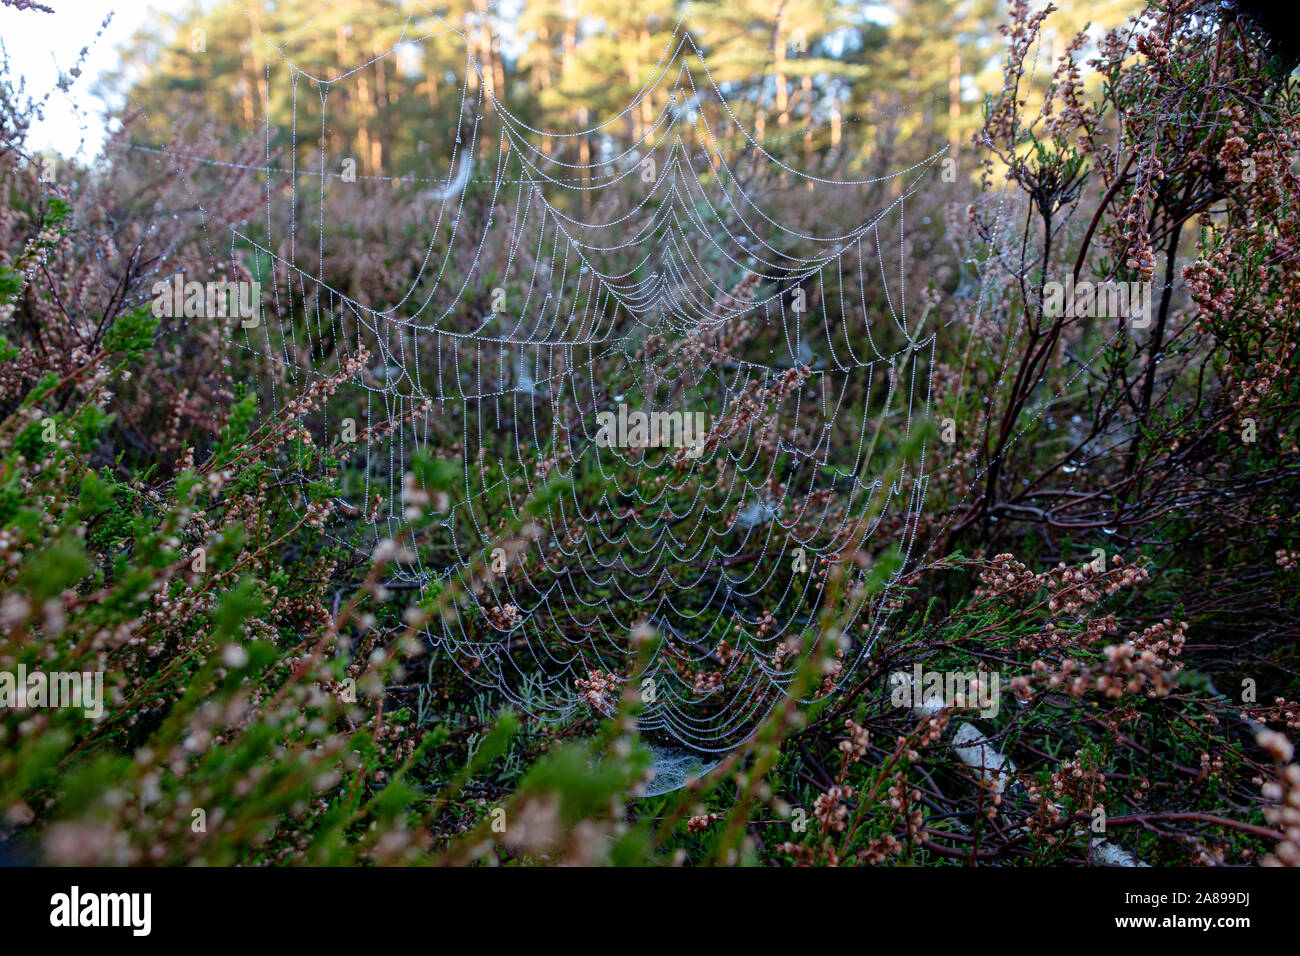 Spinnennetz zwischen Besenheide mit Tautropfen Stock Photo